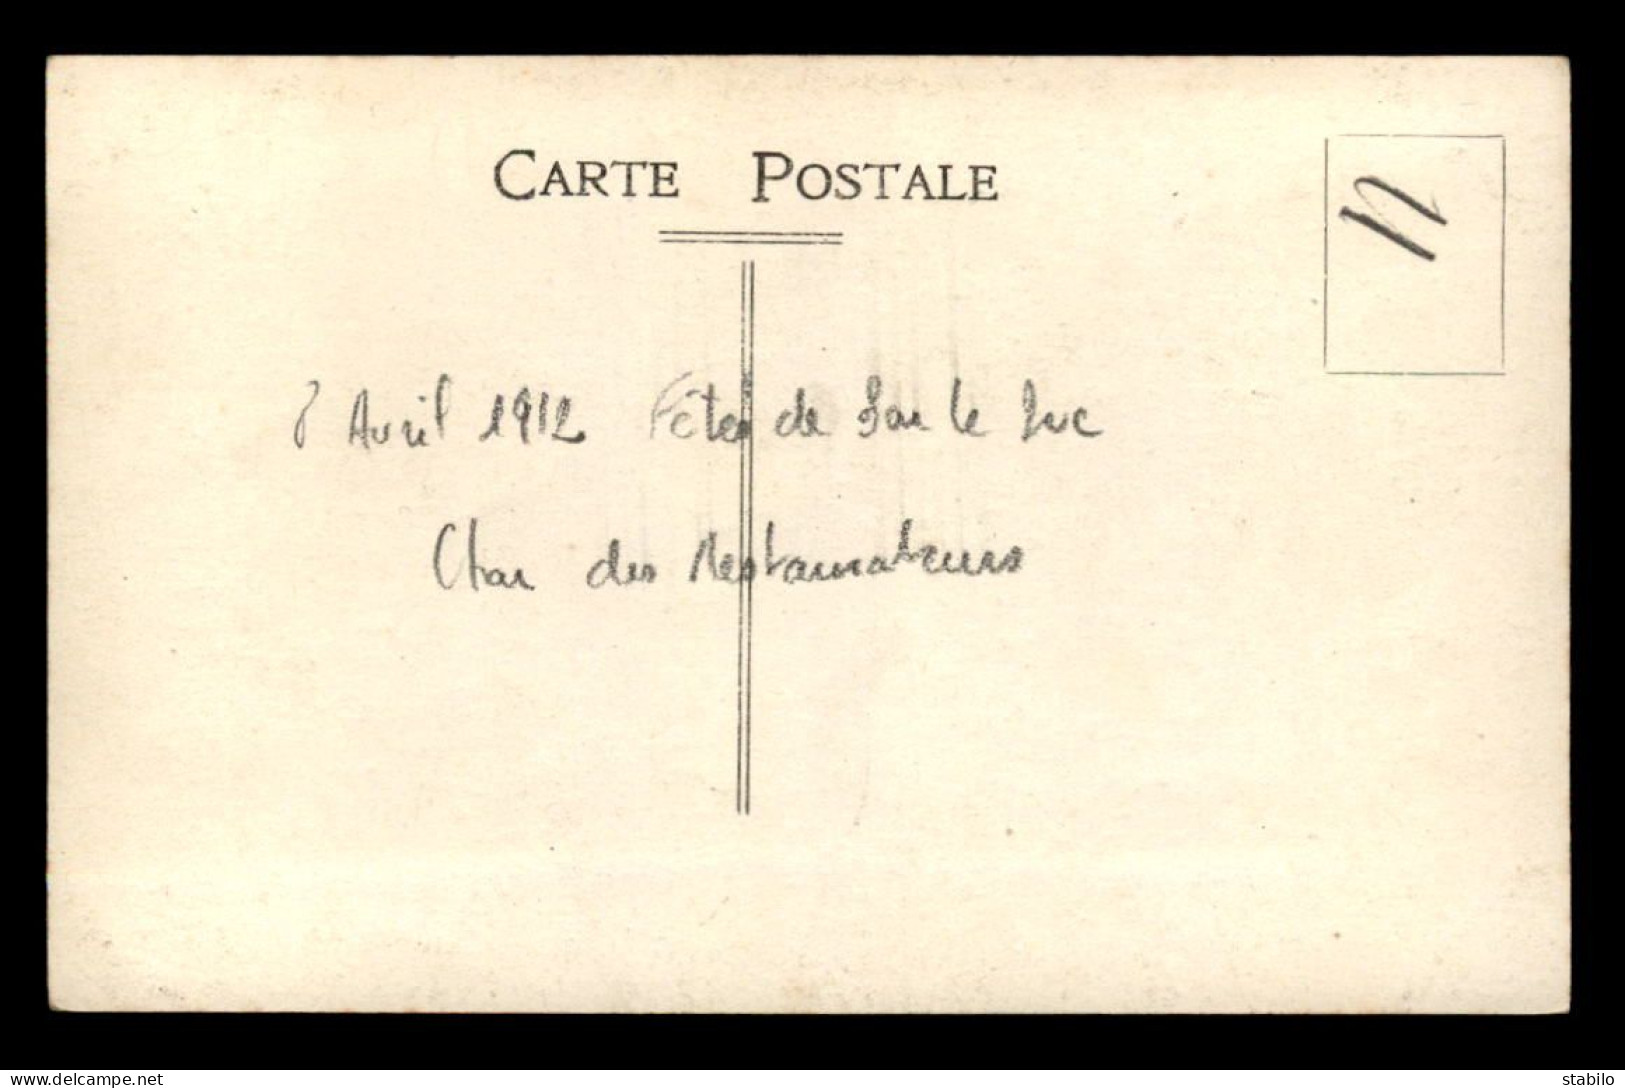 55 - BAR-LE-DUC - FETES DU 8 AVRIL 1912 - LE CHAR DES RESTAURATEURS - CARTE PHOTO ORIGINALE - Bar Le Duc